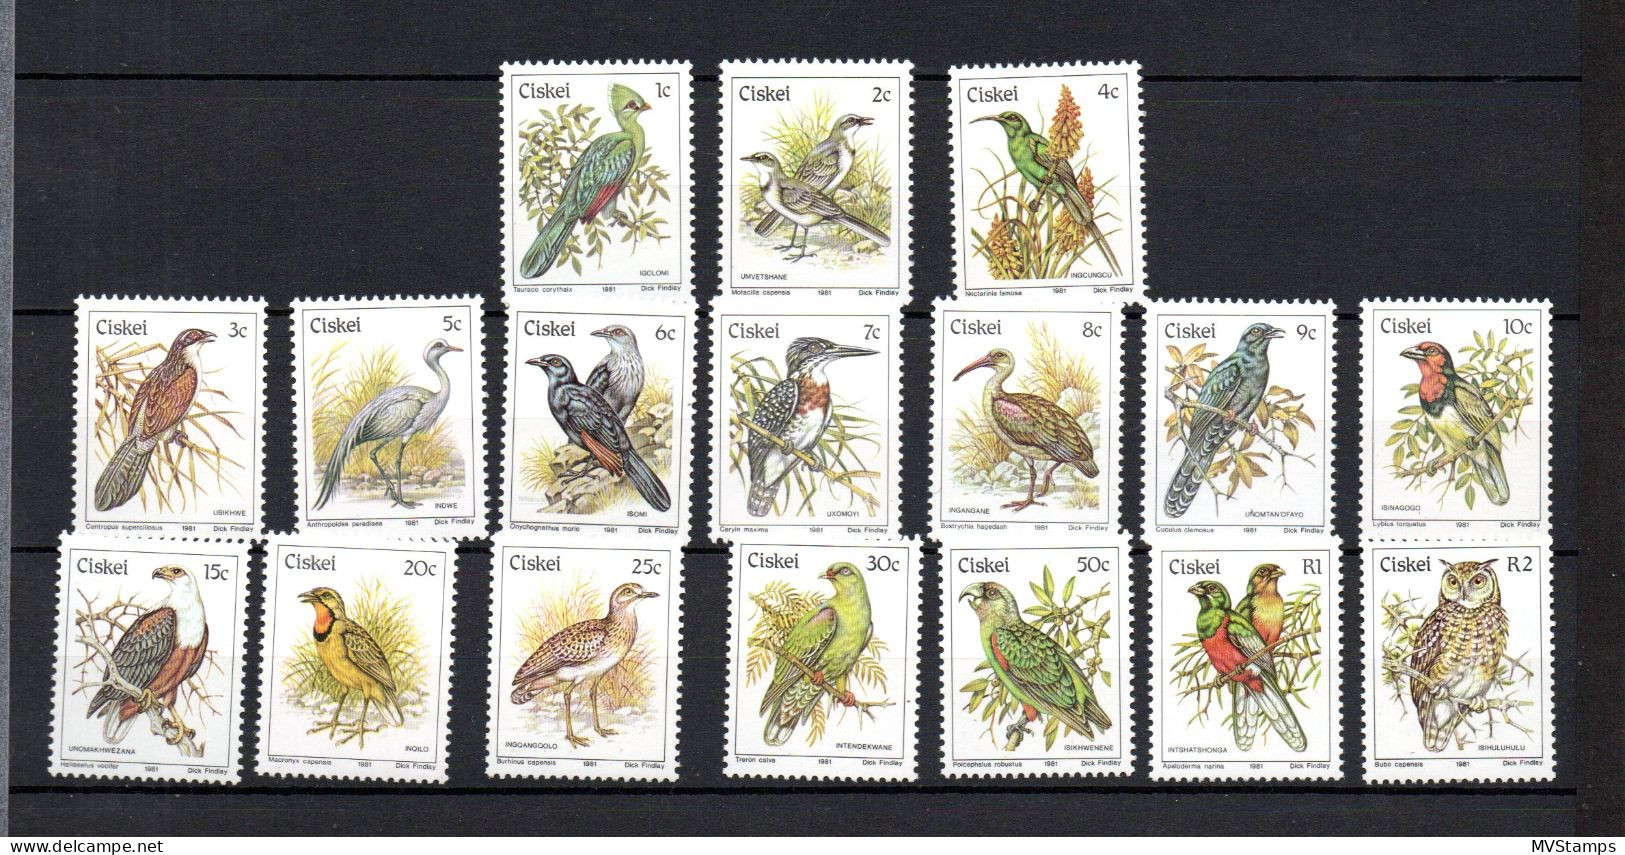 Ciskei 1981 Set Birds/Vogel Stamps ( Michel 5/21) MNH - Ciskei